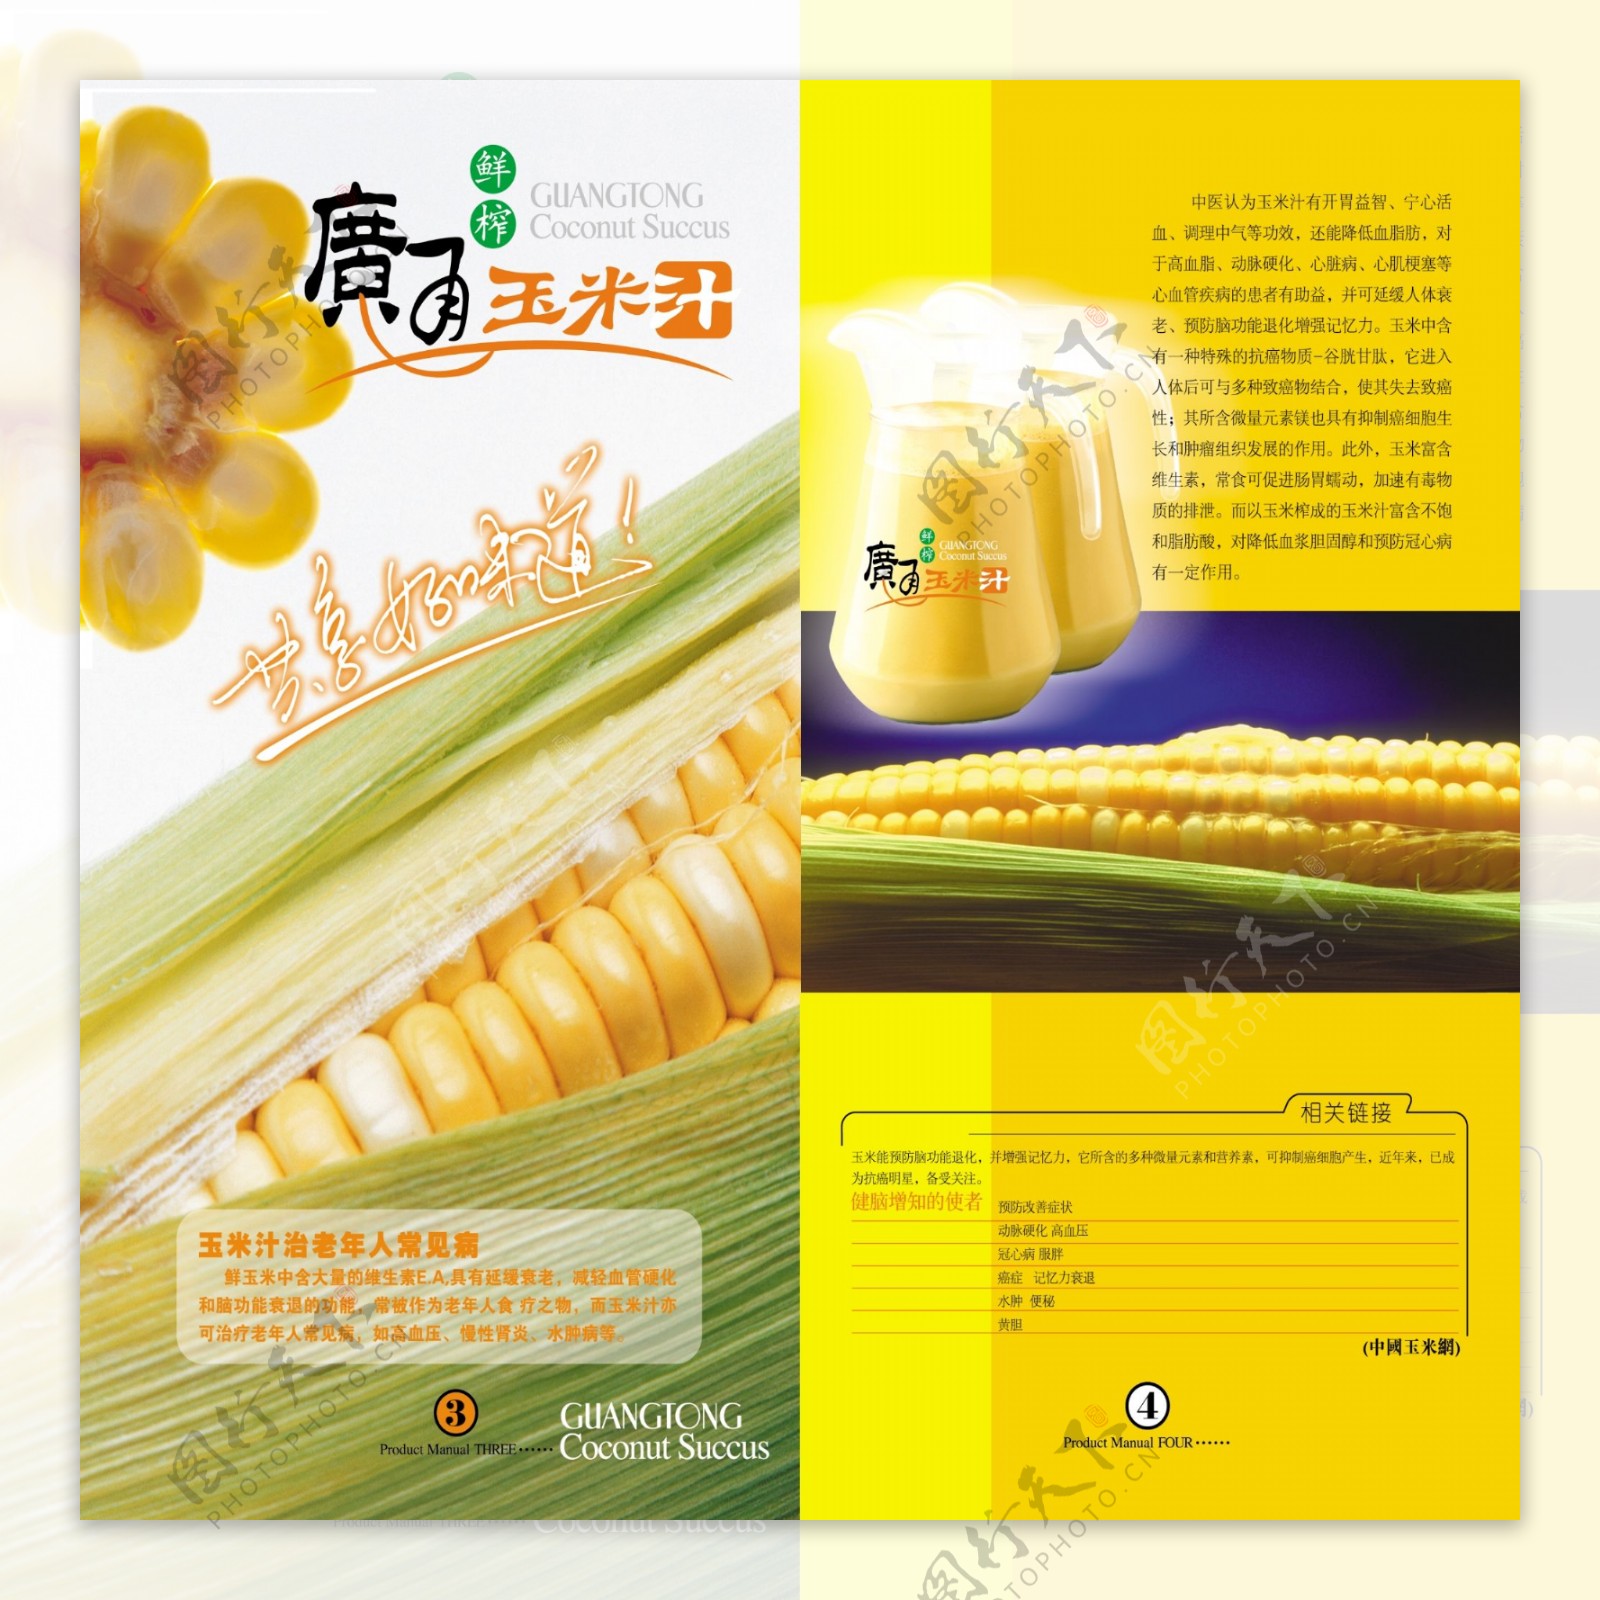 玉米汁广告图片